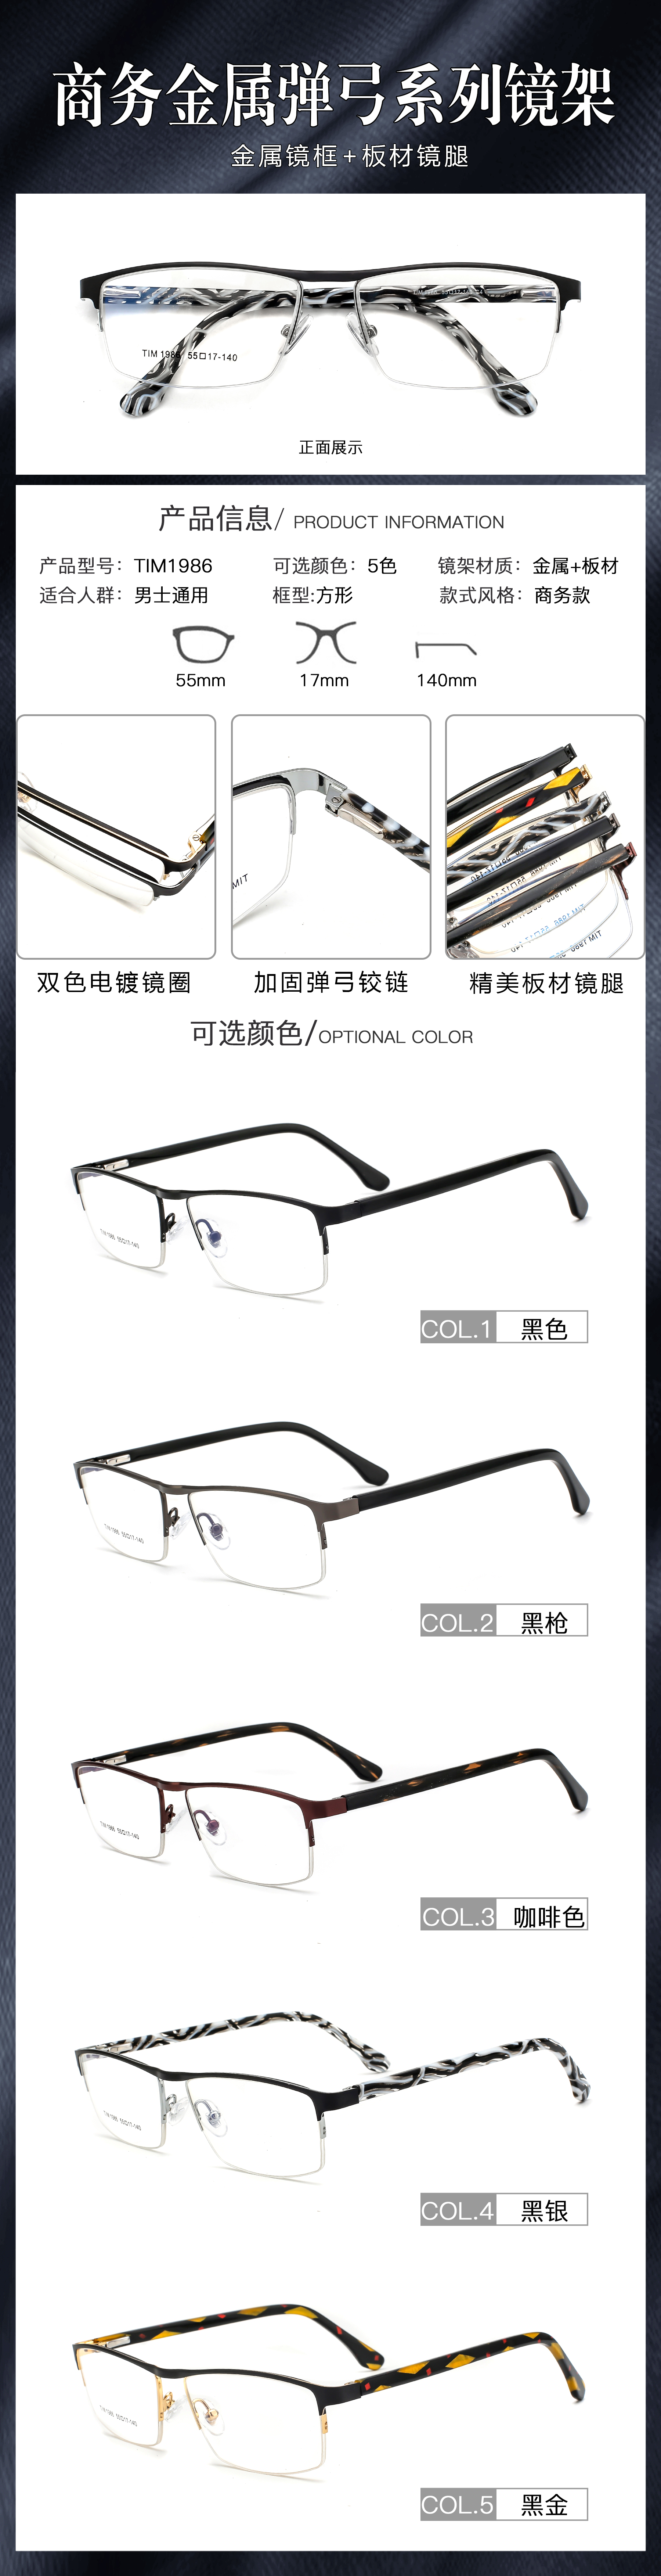 إطارات نظارات بيز